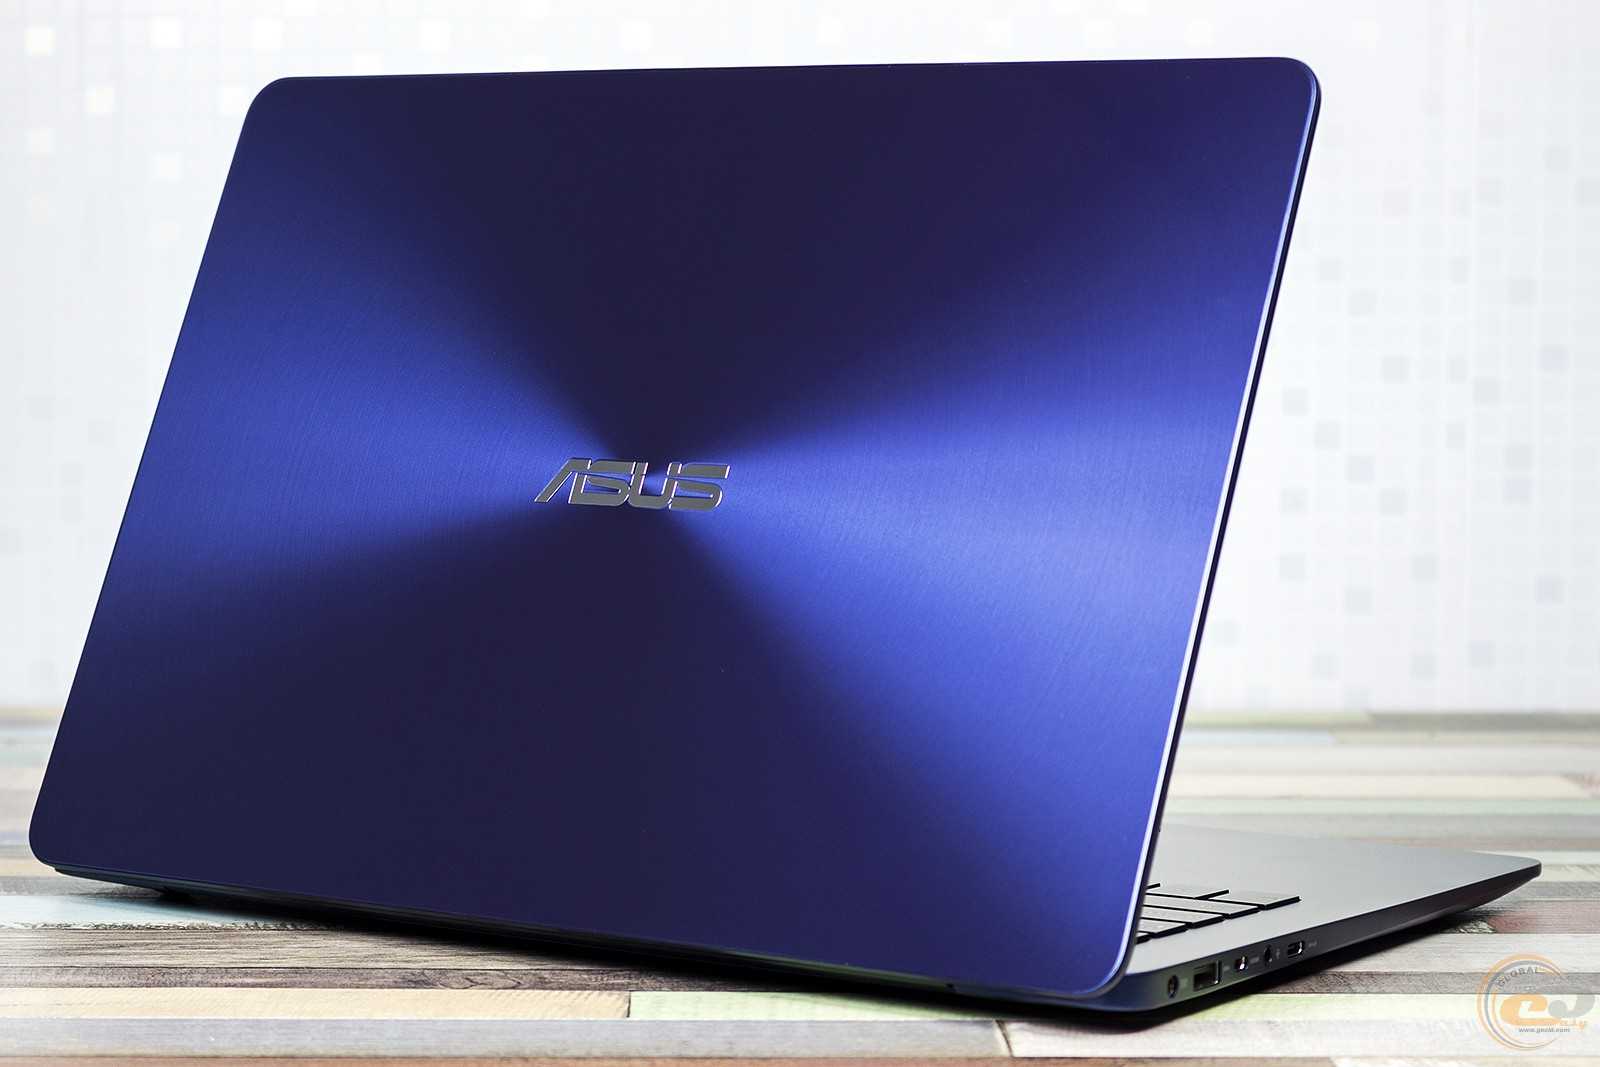 Ноутбук asus zenbook ux430 - купить в интернет магазинe. цены, характеристики, доставка по москве и россии